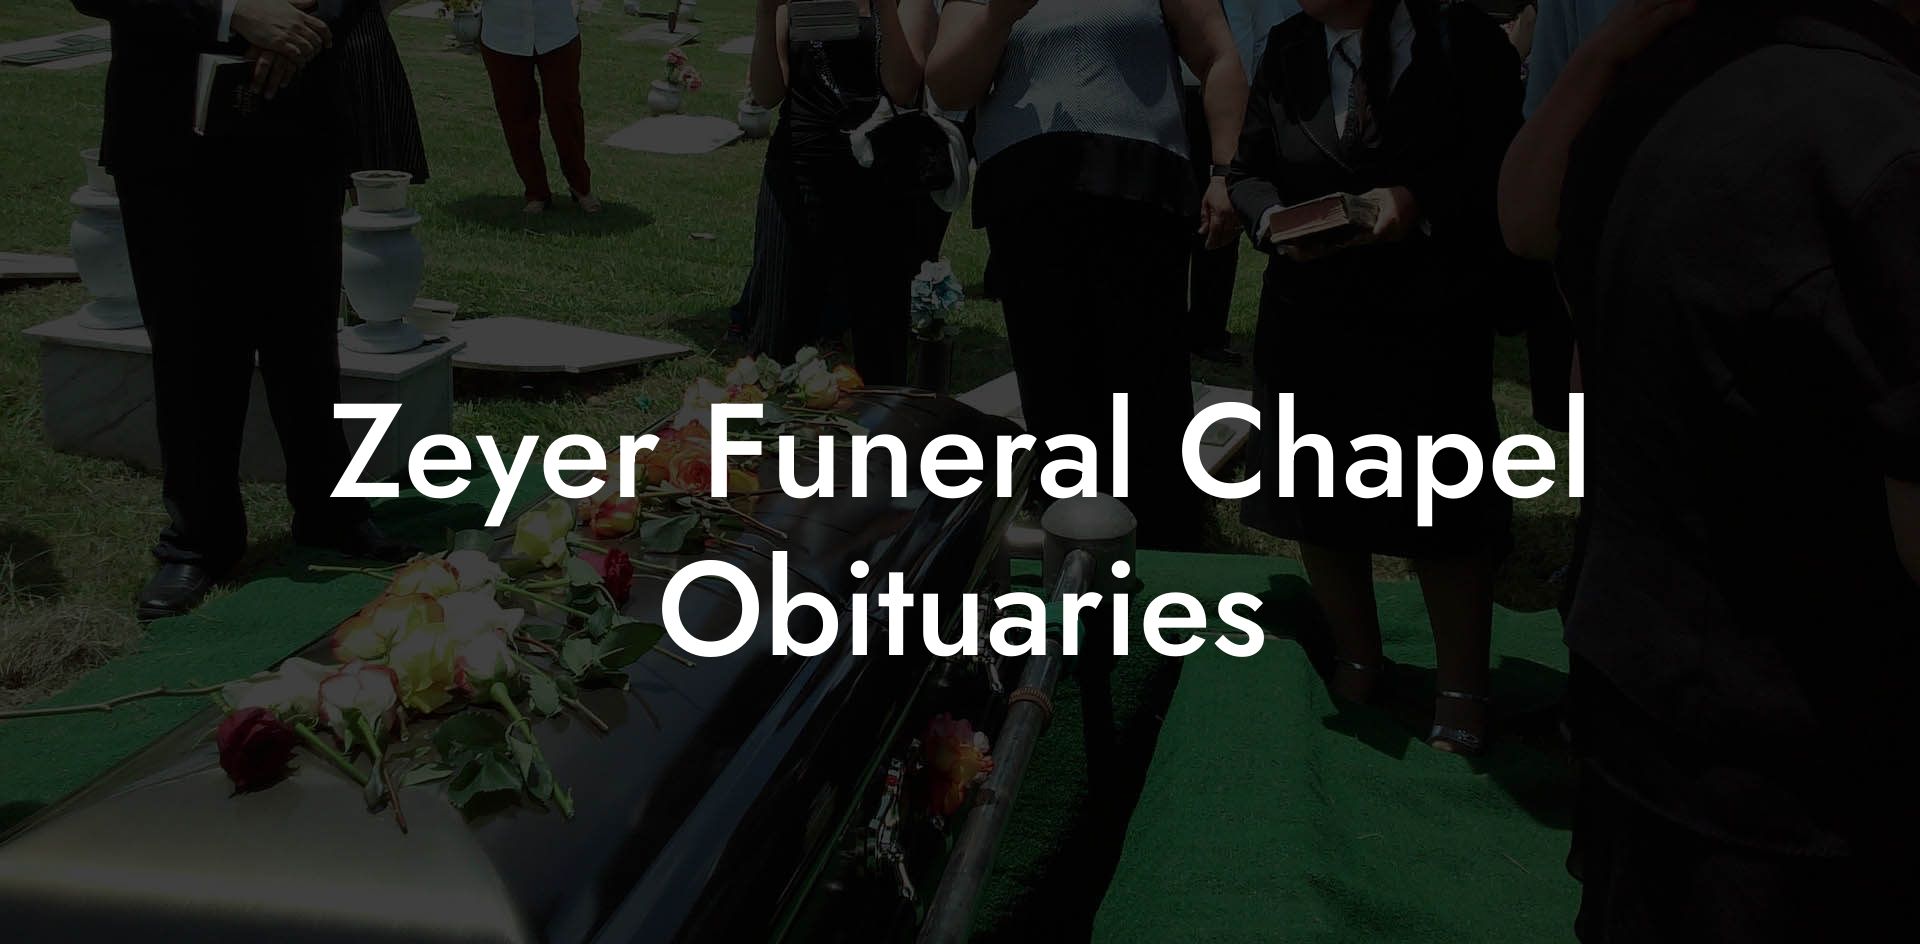 Zeyer Funeral Chapel Obituaries